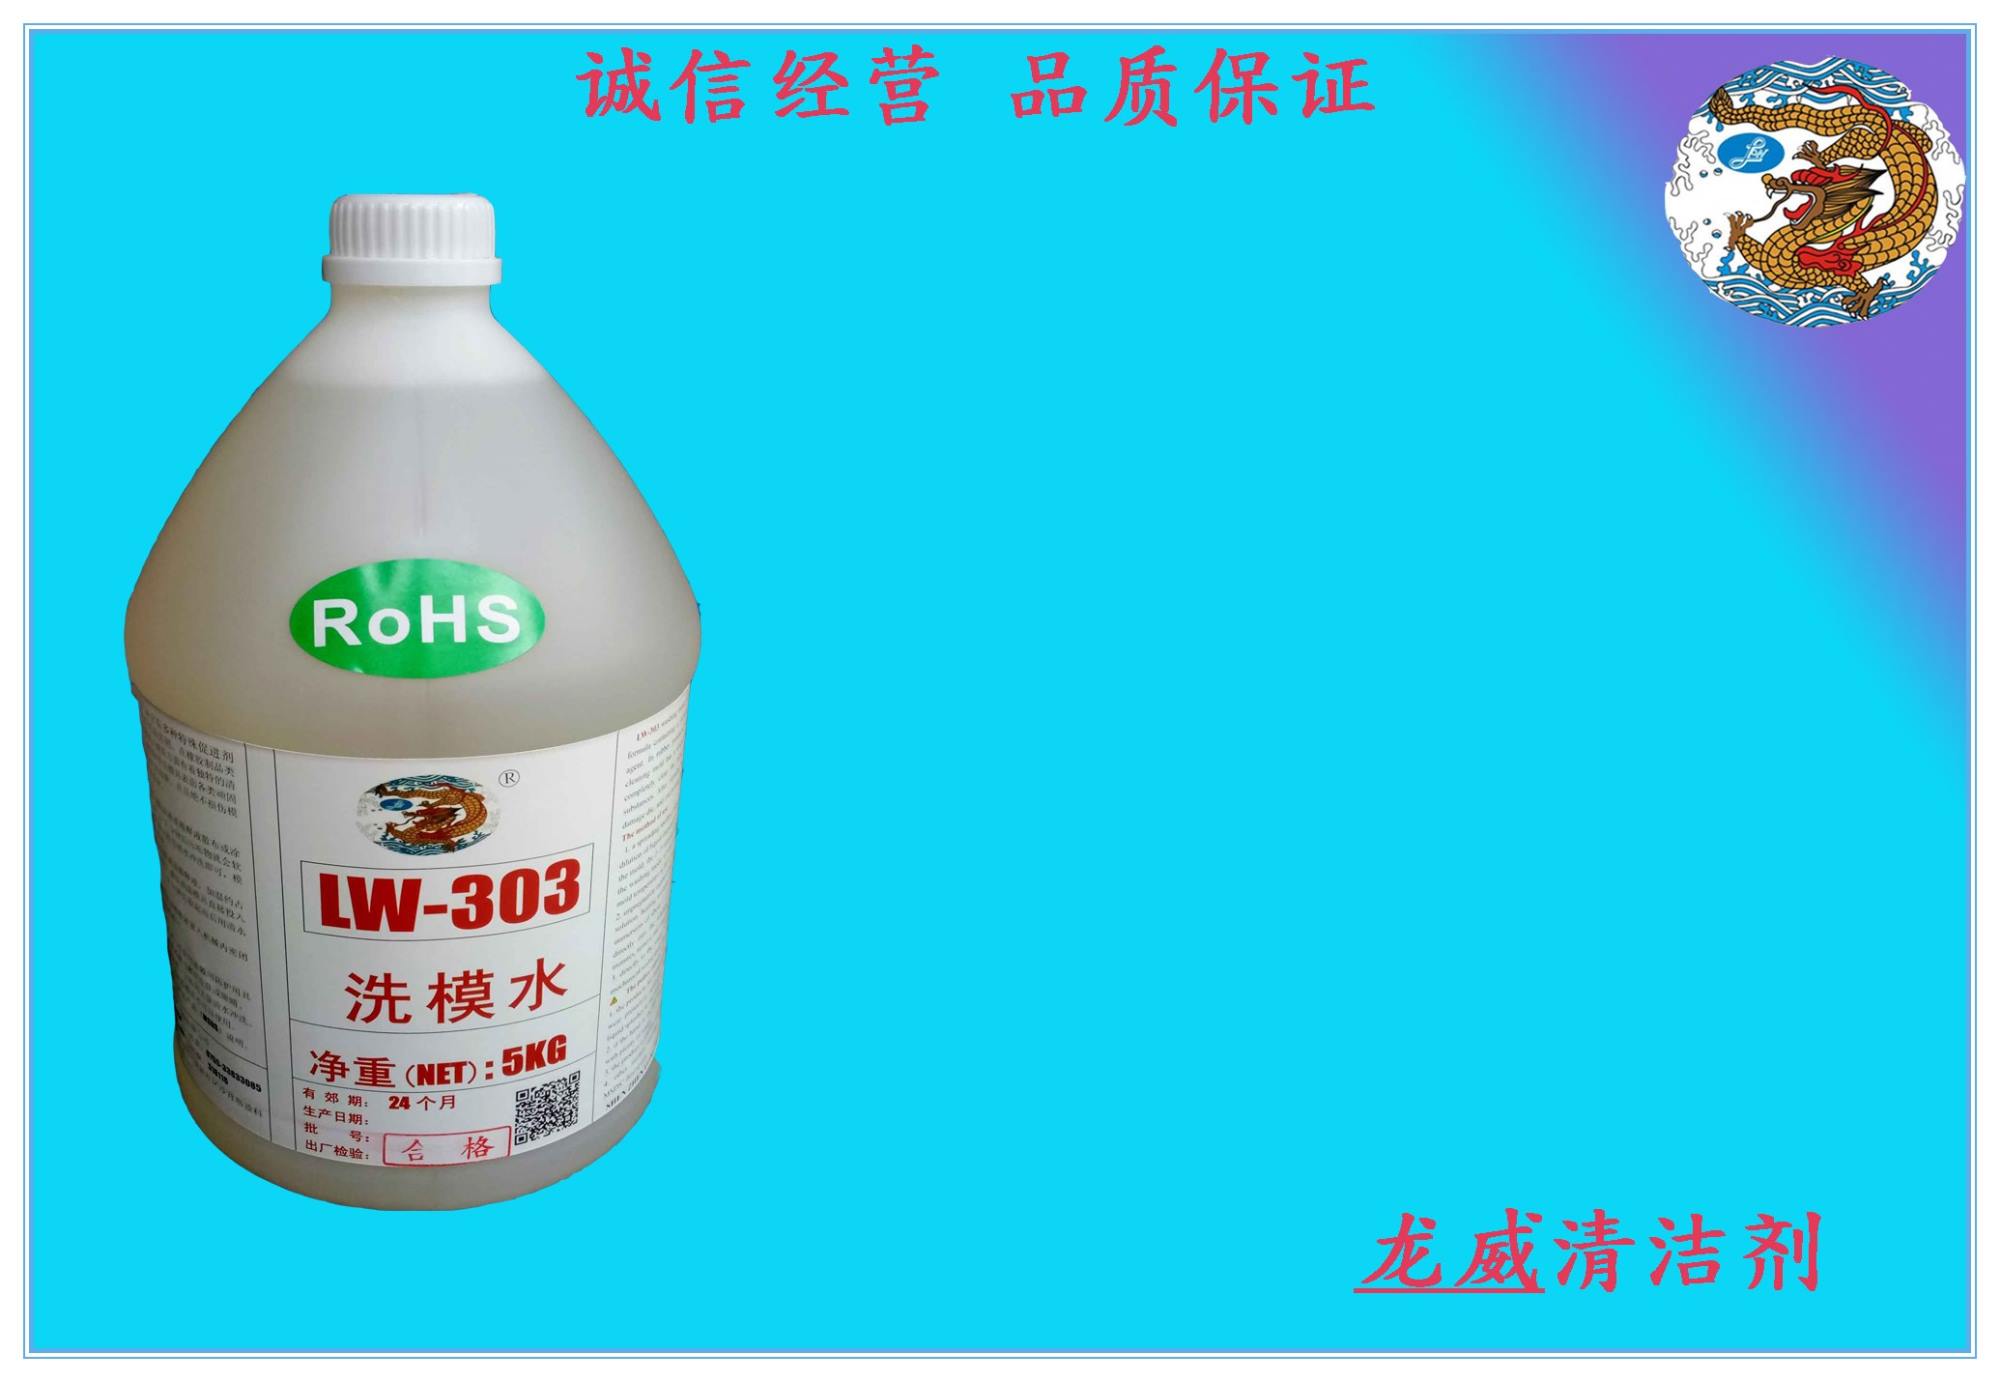 深圳龙威清洁剂有限公司  洗模水 脱模剂